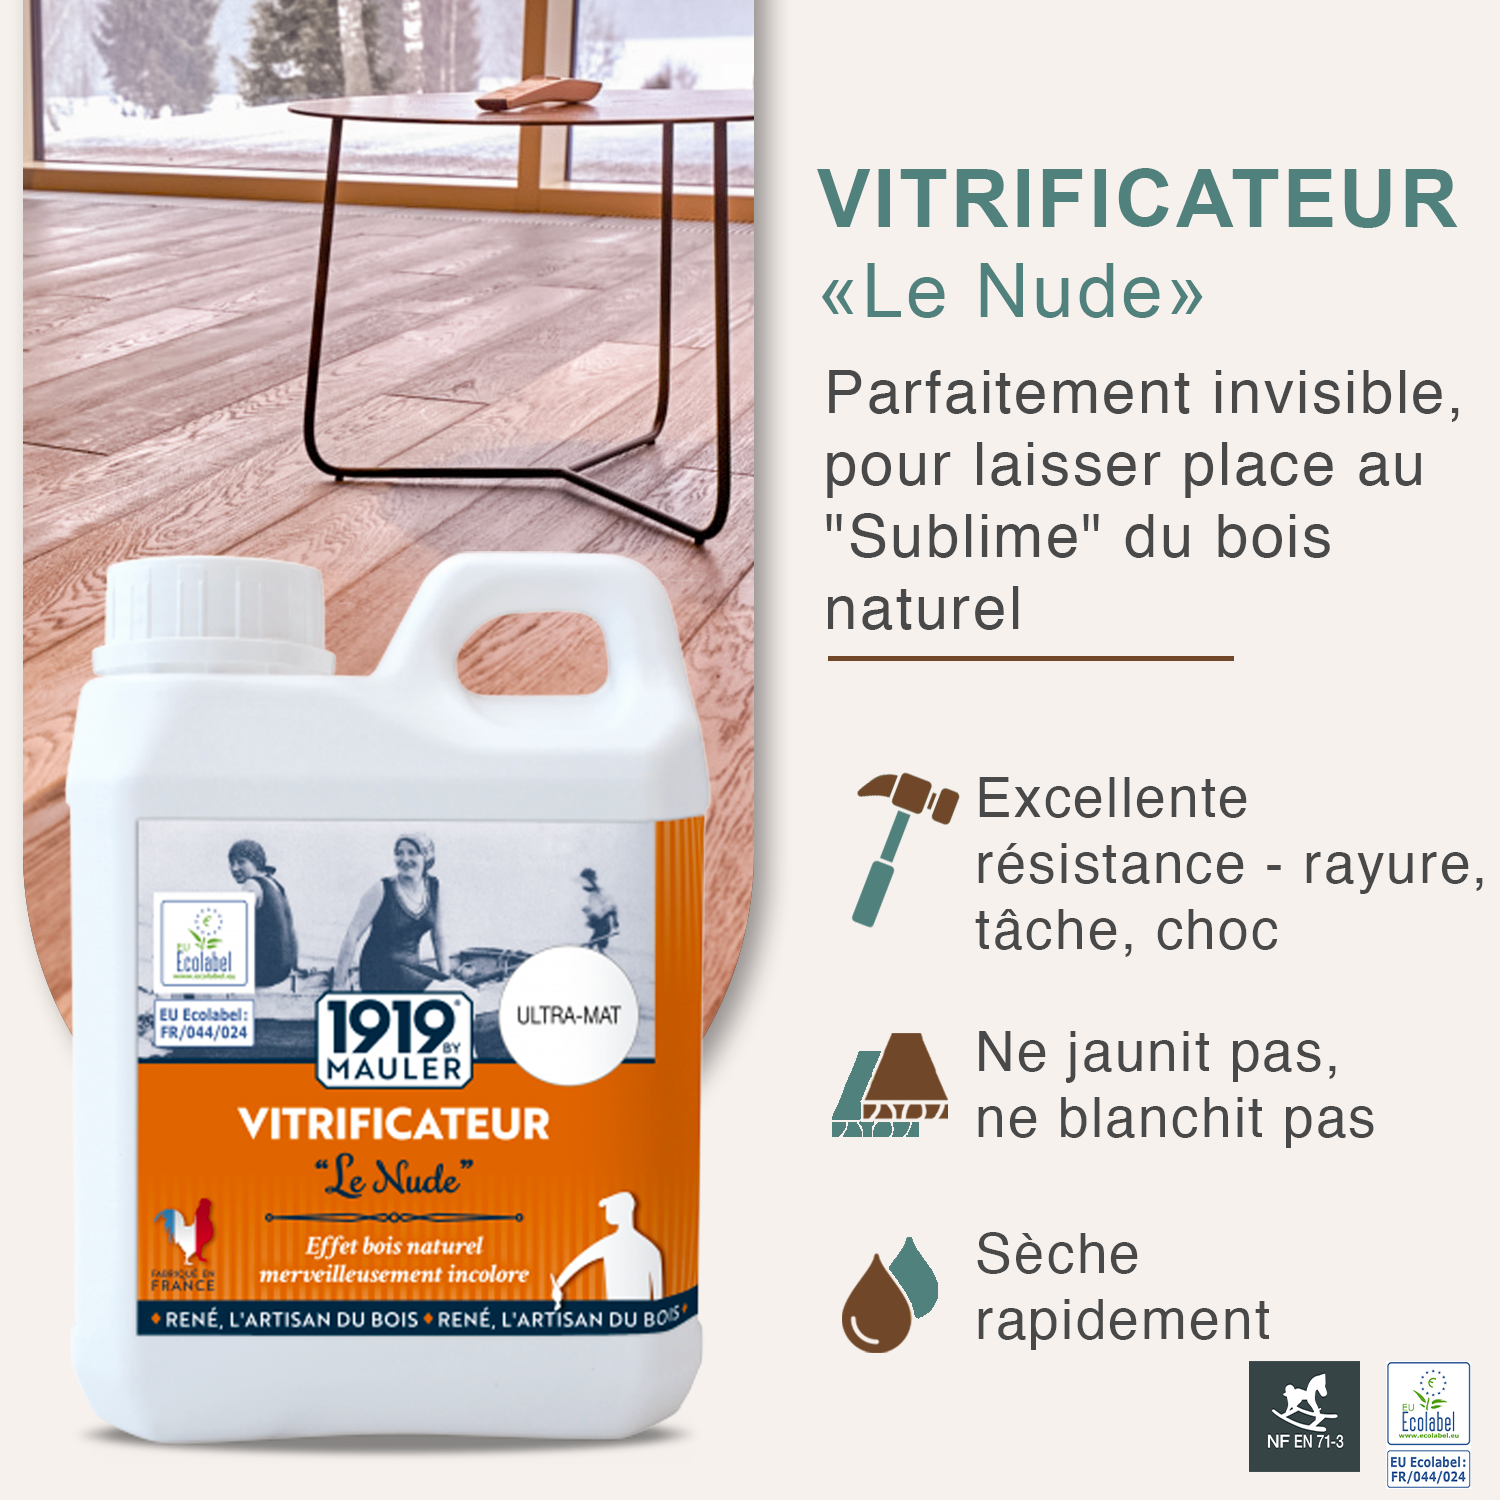 Vitrificateur Parquet Ultra Mat Effet Invisible 2,5l "le Nude" 1919 By Mauler : anti-taches & rayures - Ecolabel sans odeur 1